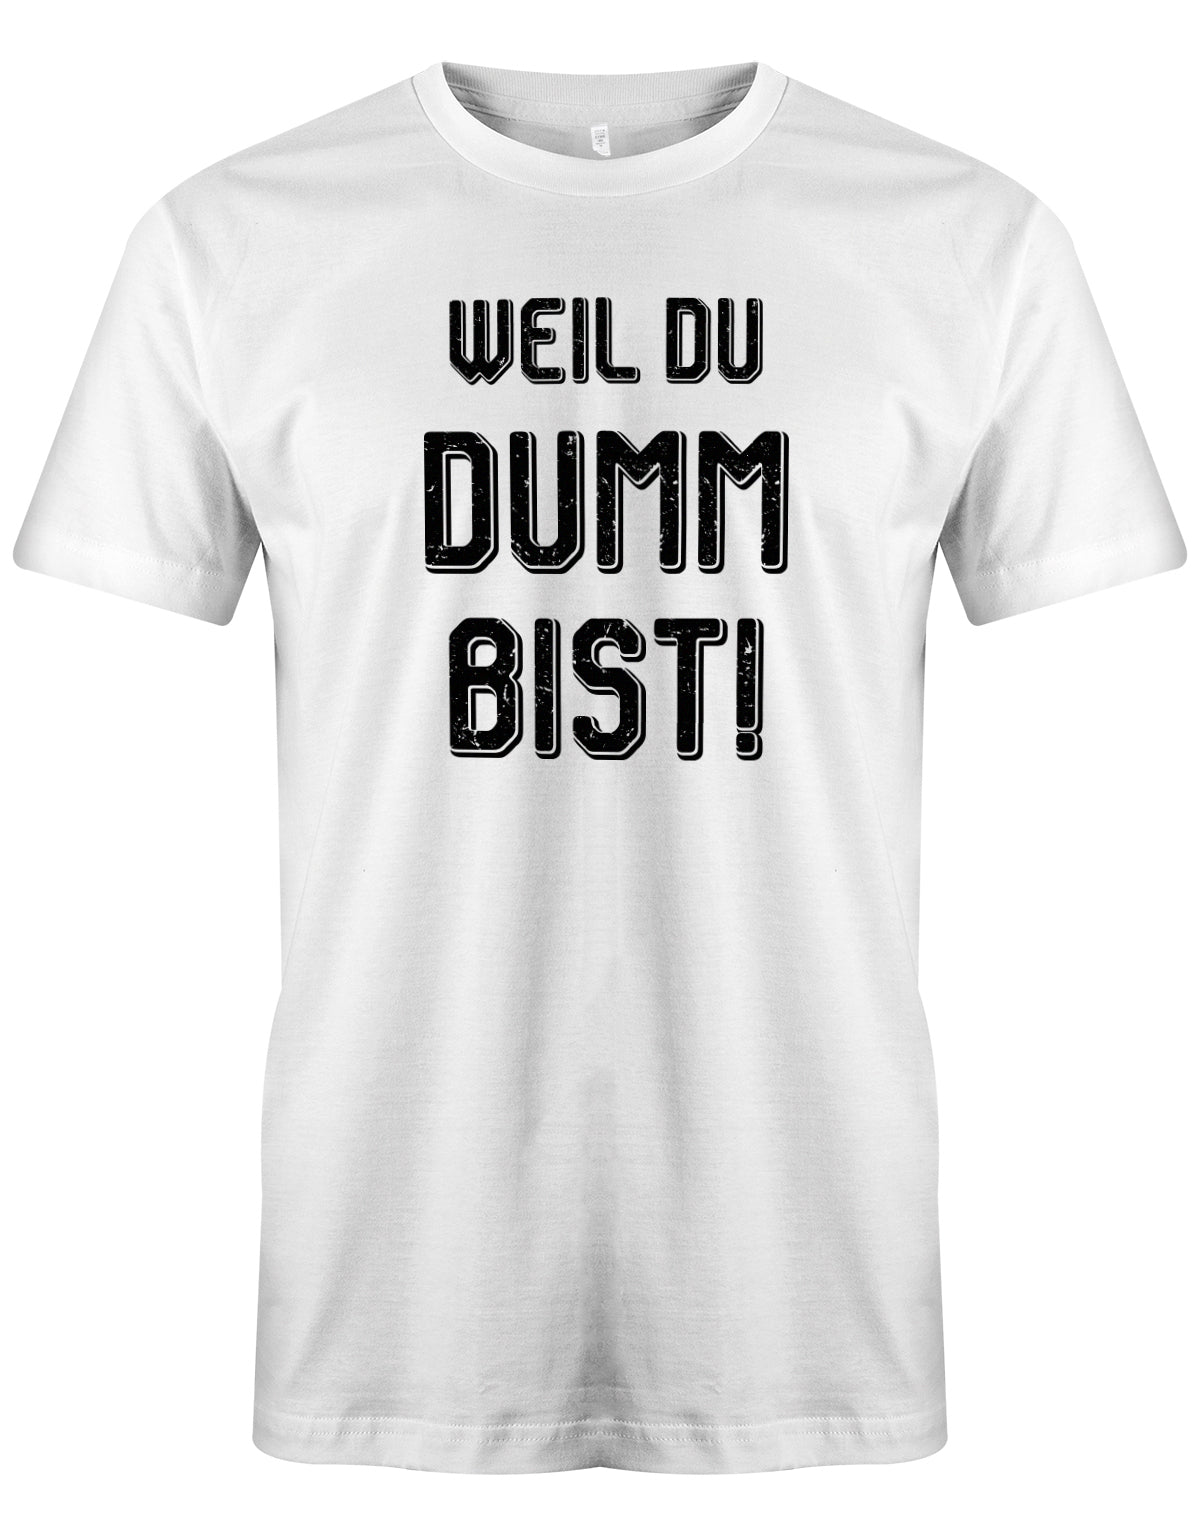 Weil Du dumm bist - Shirt mit Spruch - Arbeit - Herren T-Shirt Weiss